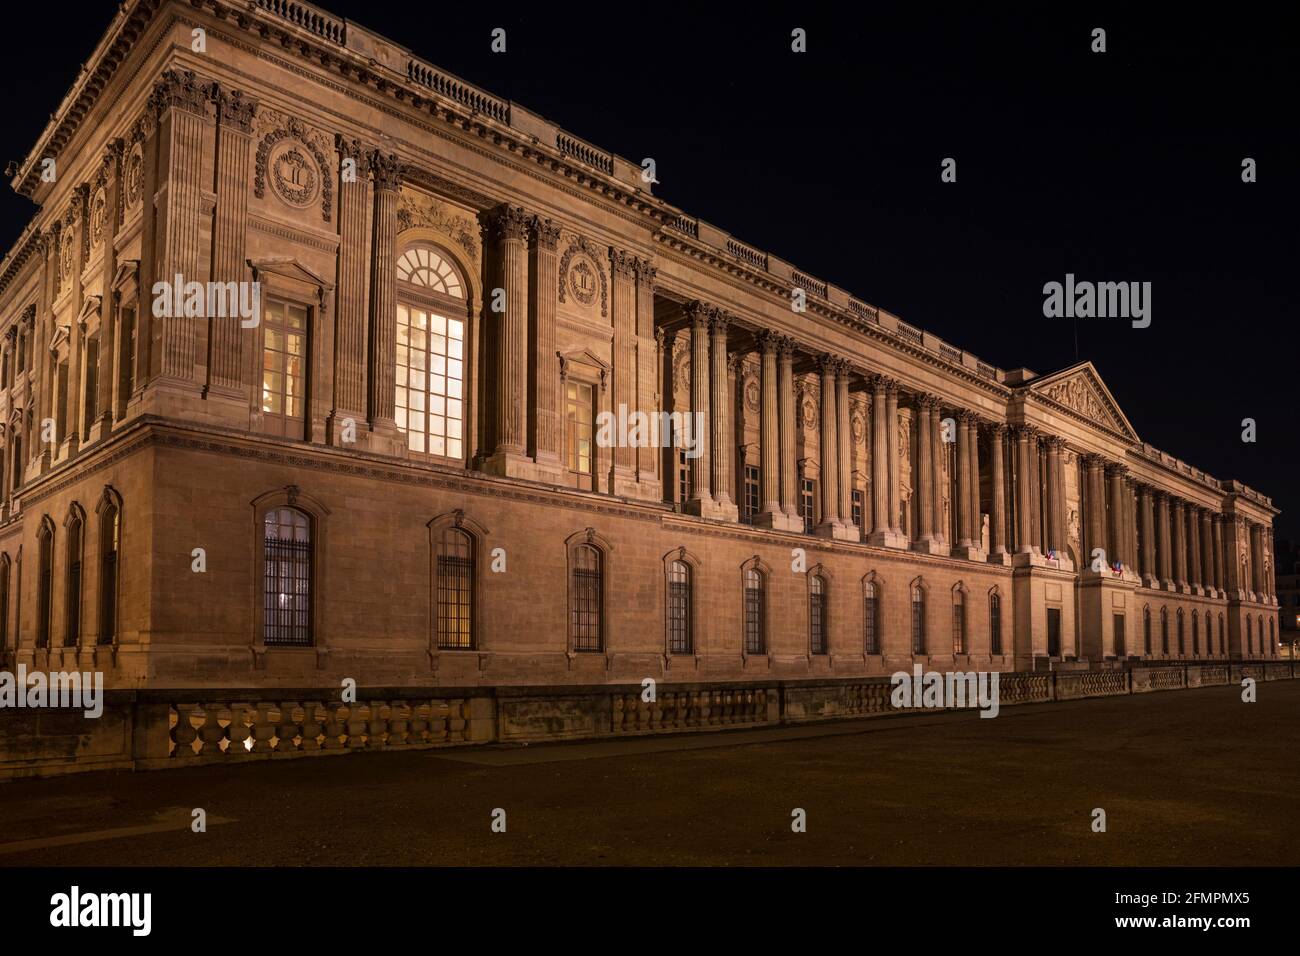 The Louvre Colonnade / Colonnade de Perrault, Paris, France. Stock Photo